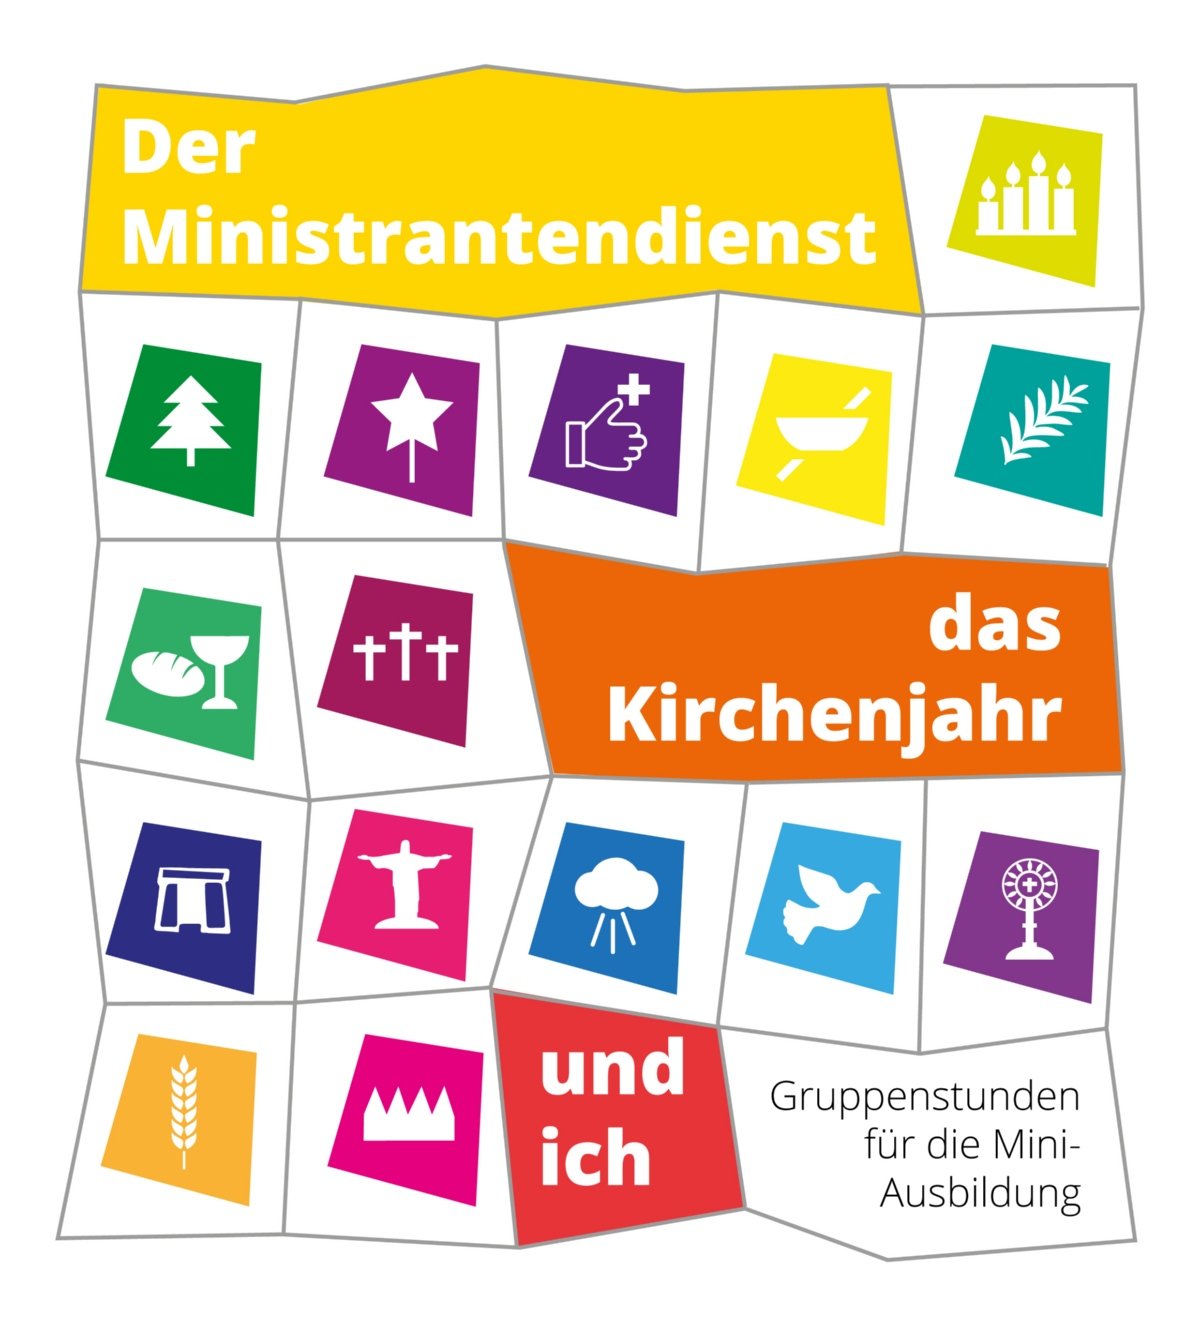 Der Ministrantendienst, das Kirchenjahr und ich (Arbeitshilfe 2022) (c) Erbzistum Bamberg / Bistum Regensburg / Bistum Würzburg